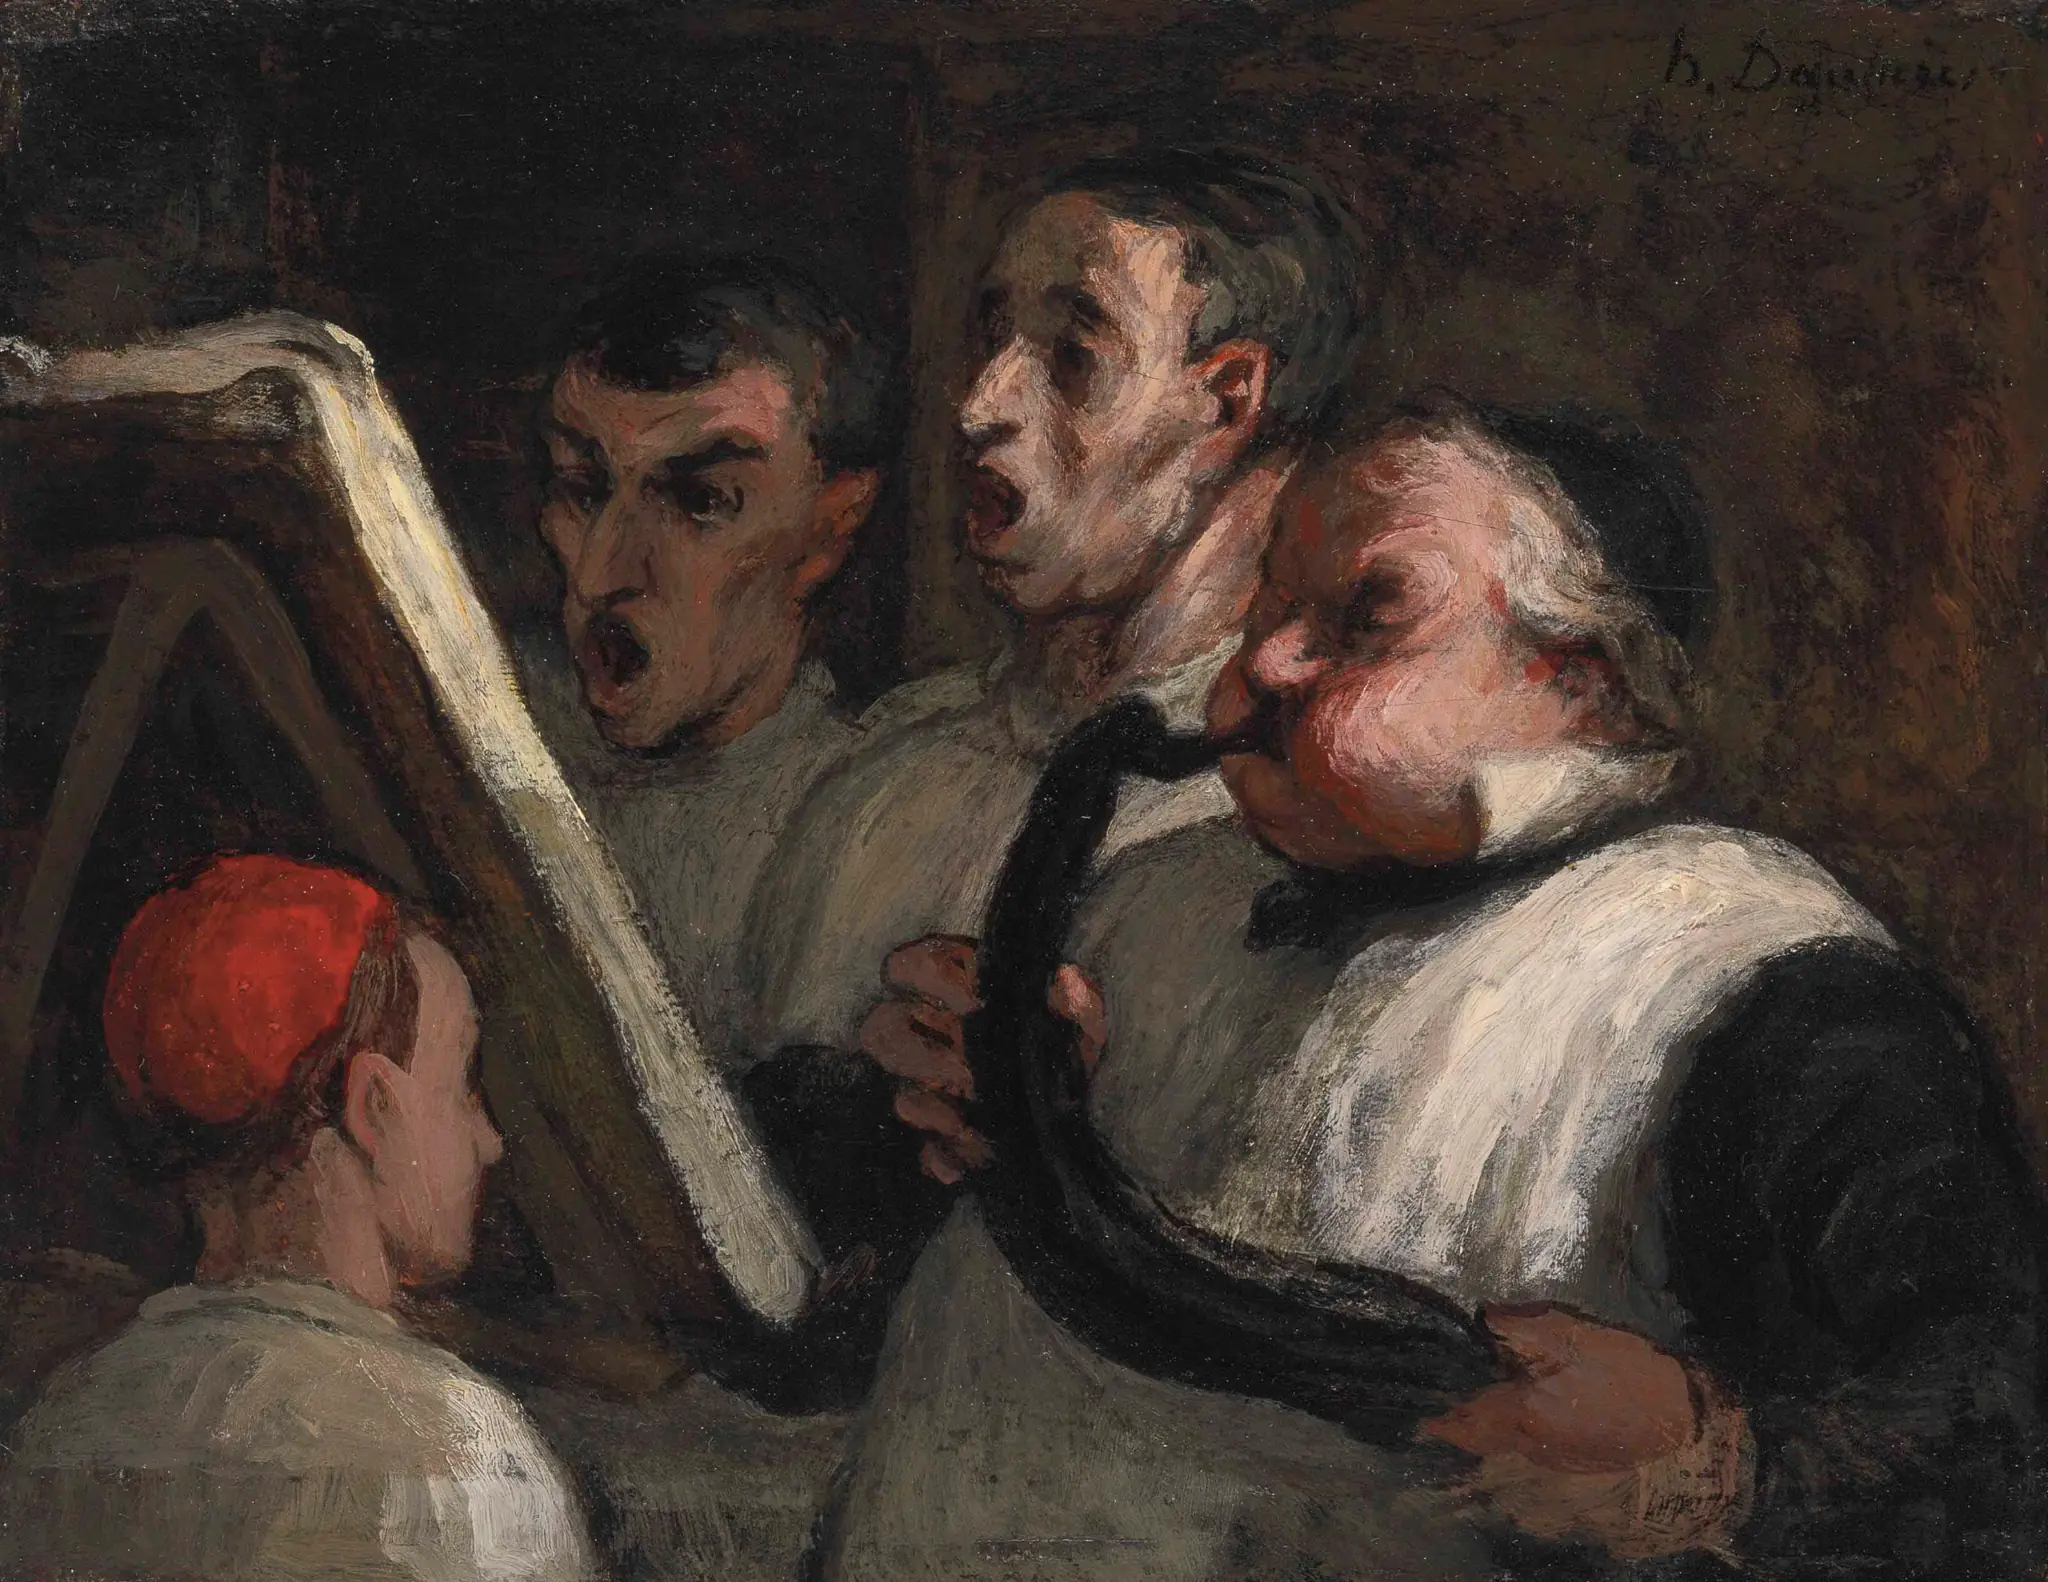 Le Lutrin, 1864-1865, Honoré Daumier